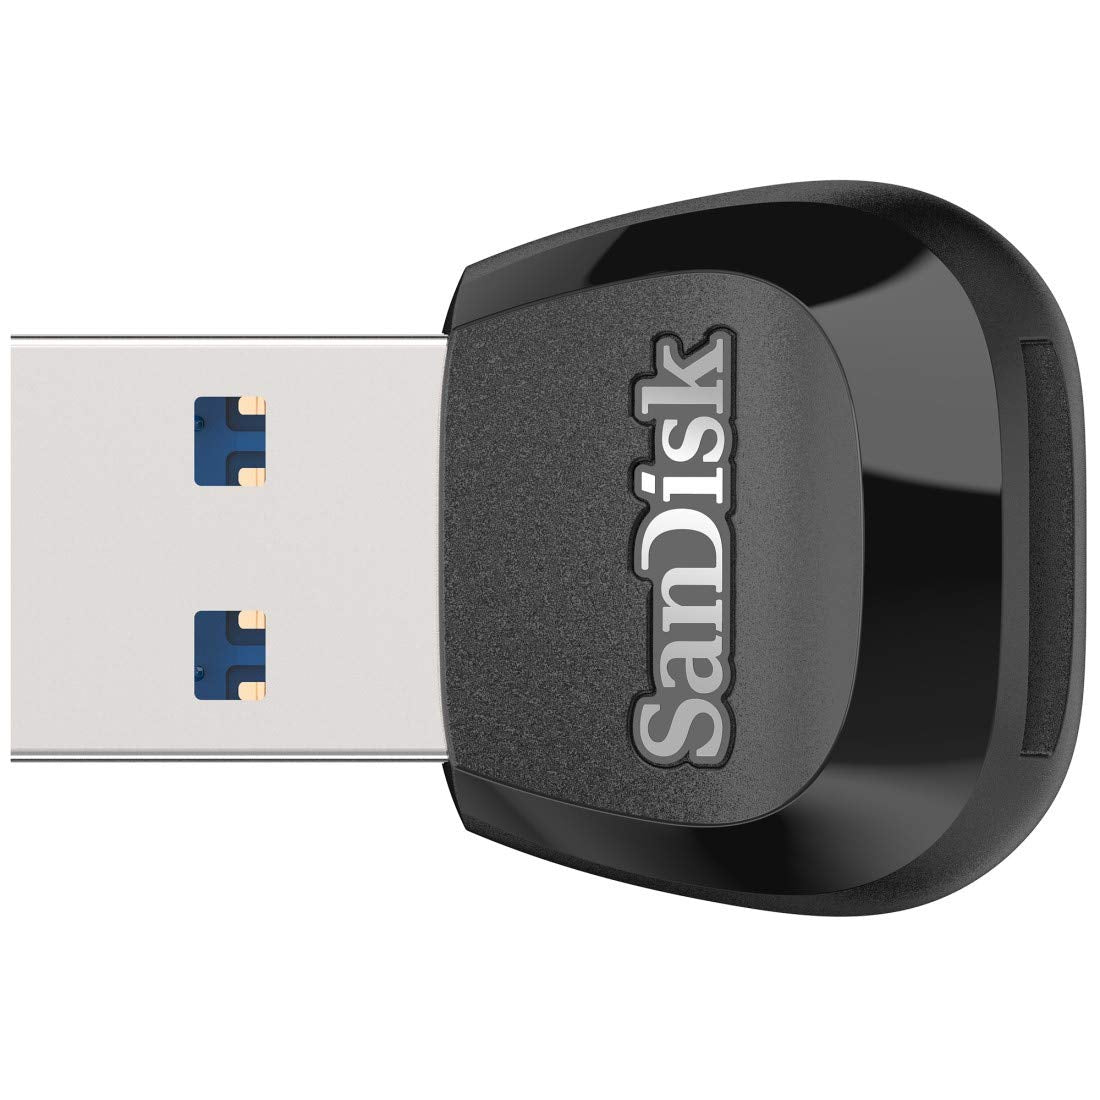 SanDisk MobileMate USB 3.0 microSD Card Reader - SDDR-B531-GN6NN